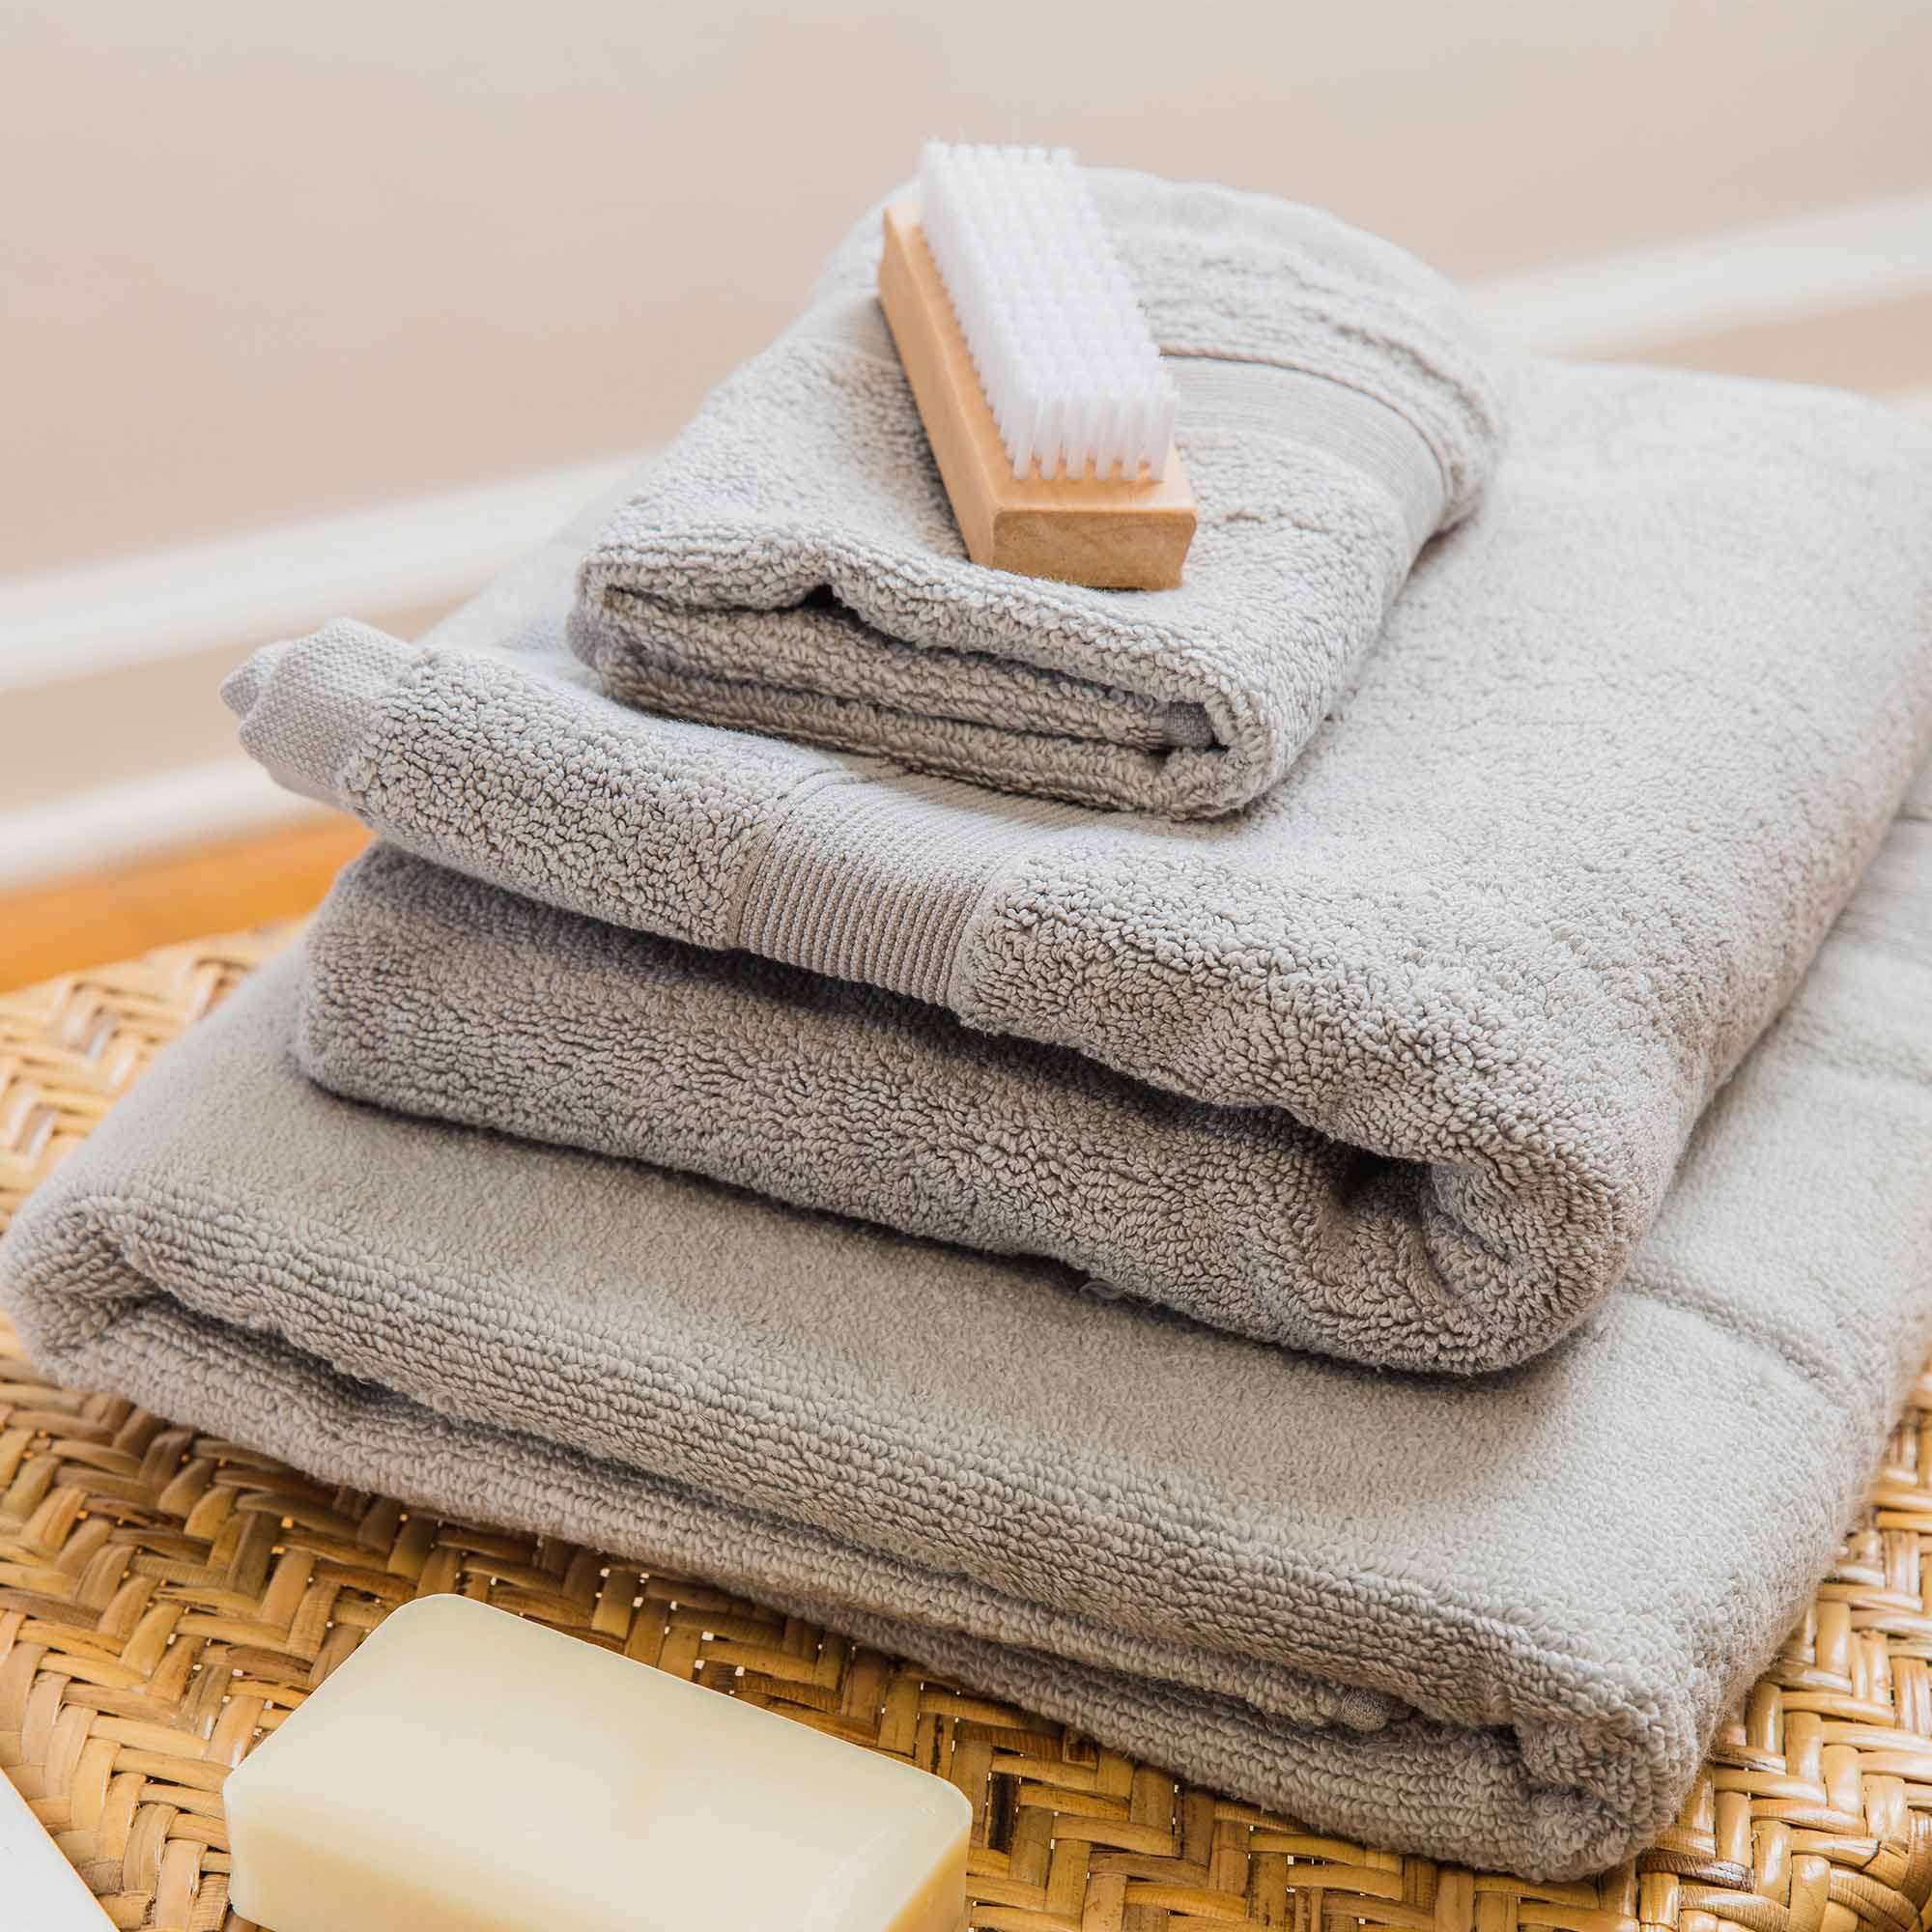 8-Piece Cotton Towel Set